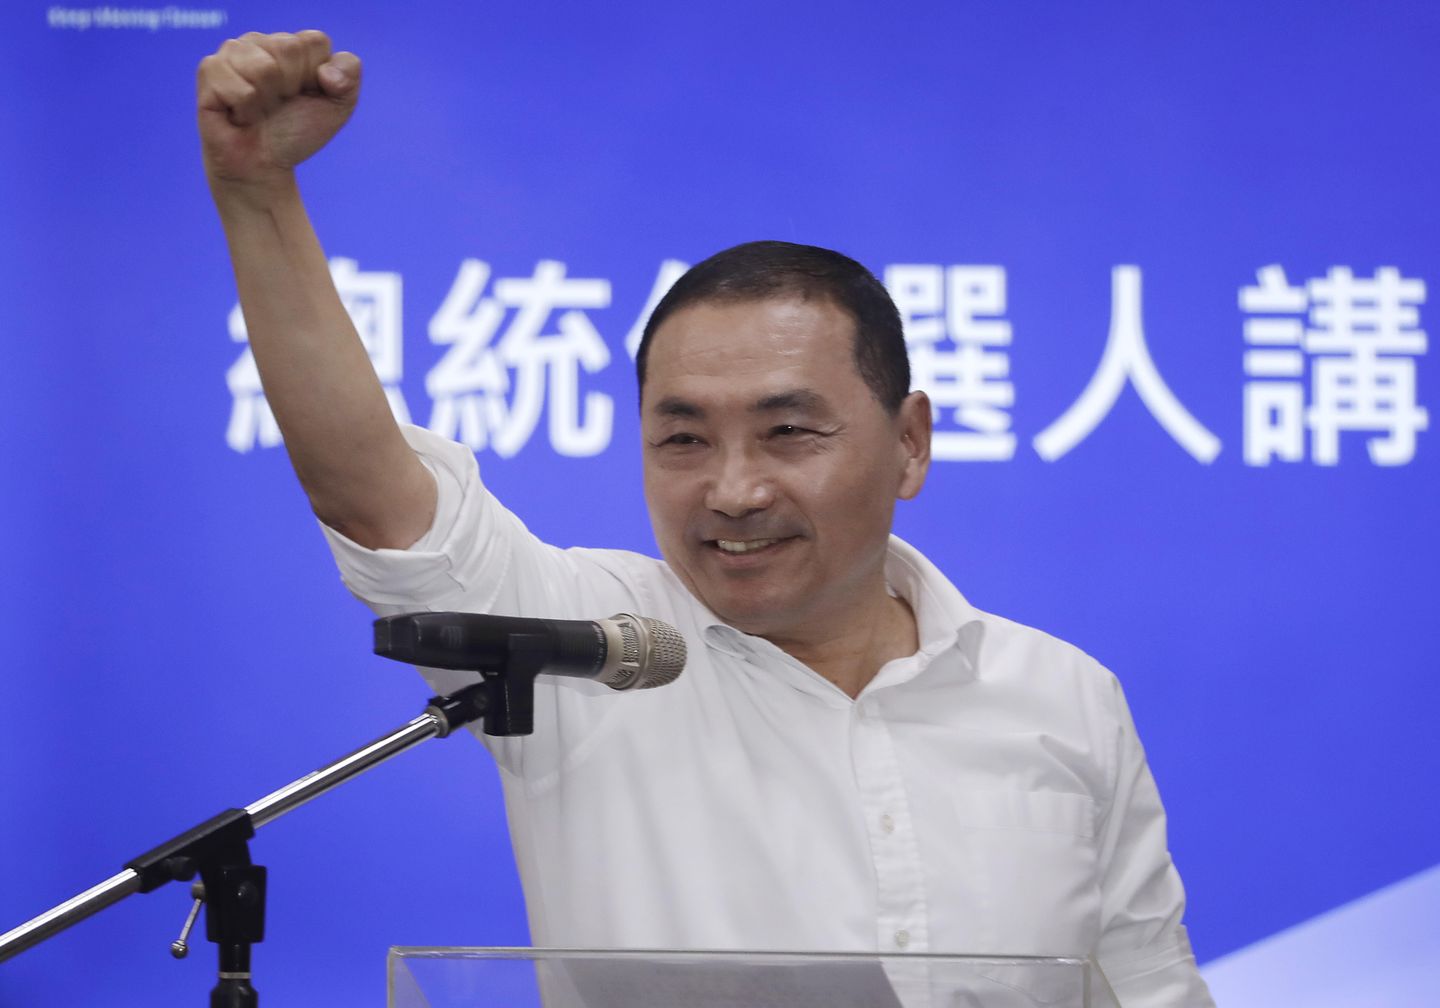 Tayvan muhalefet partisi, eski bir polis şefi olan Yeni Taipei belediye başkanını cumhurbaşkanı adayı olarak seçti.